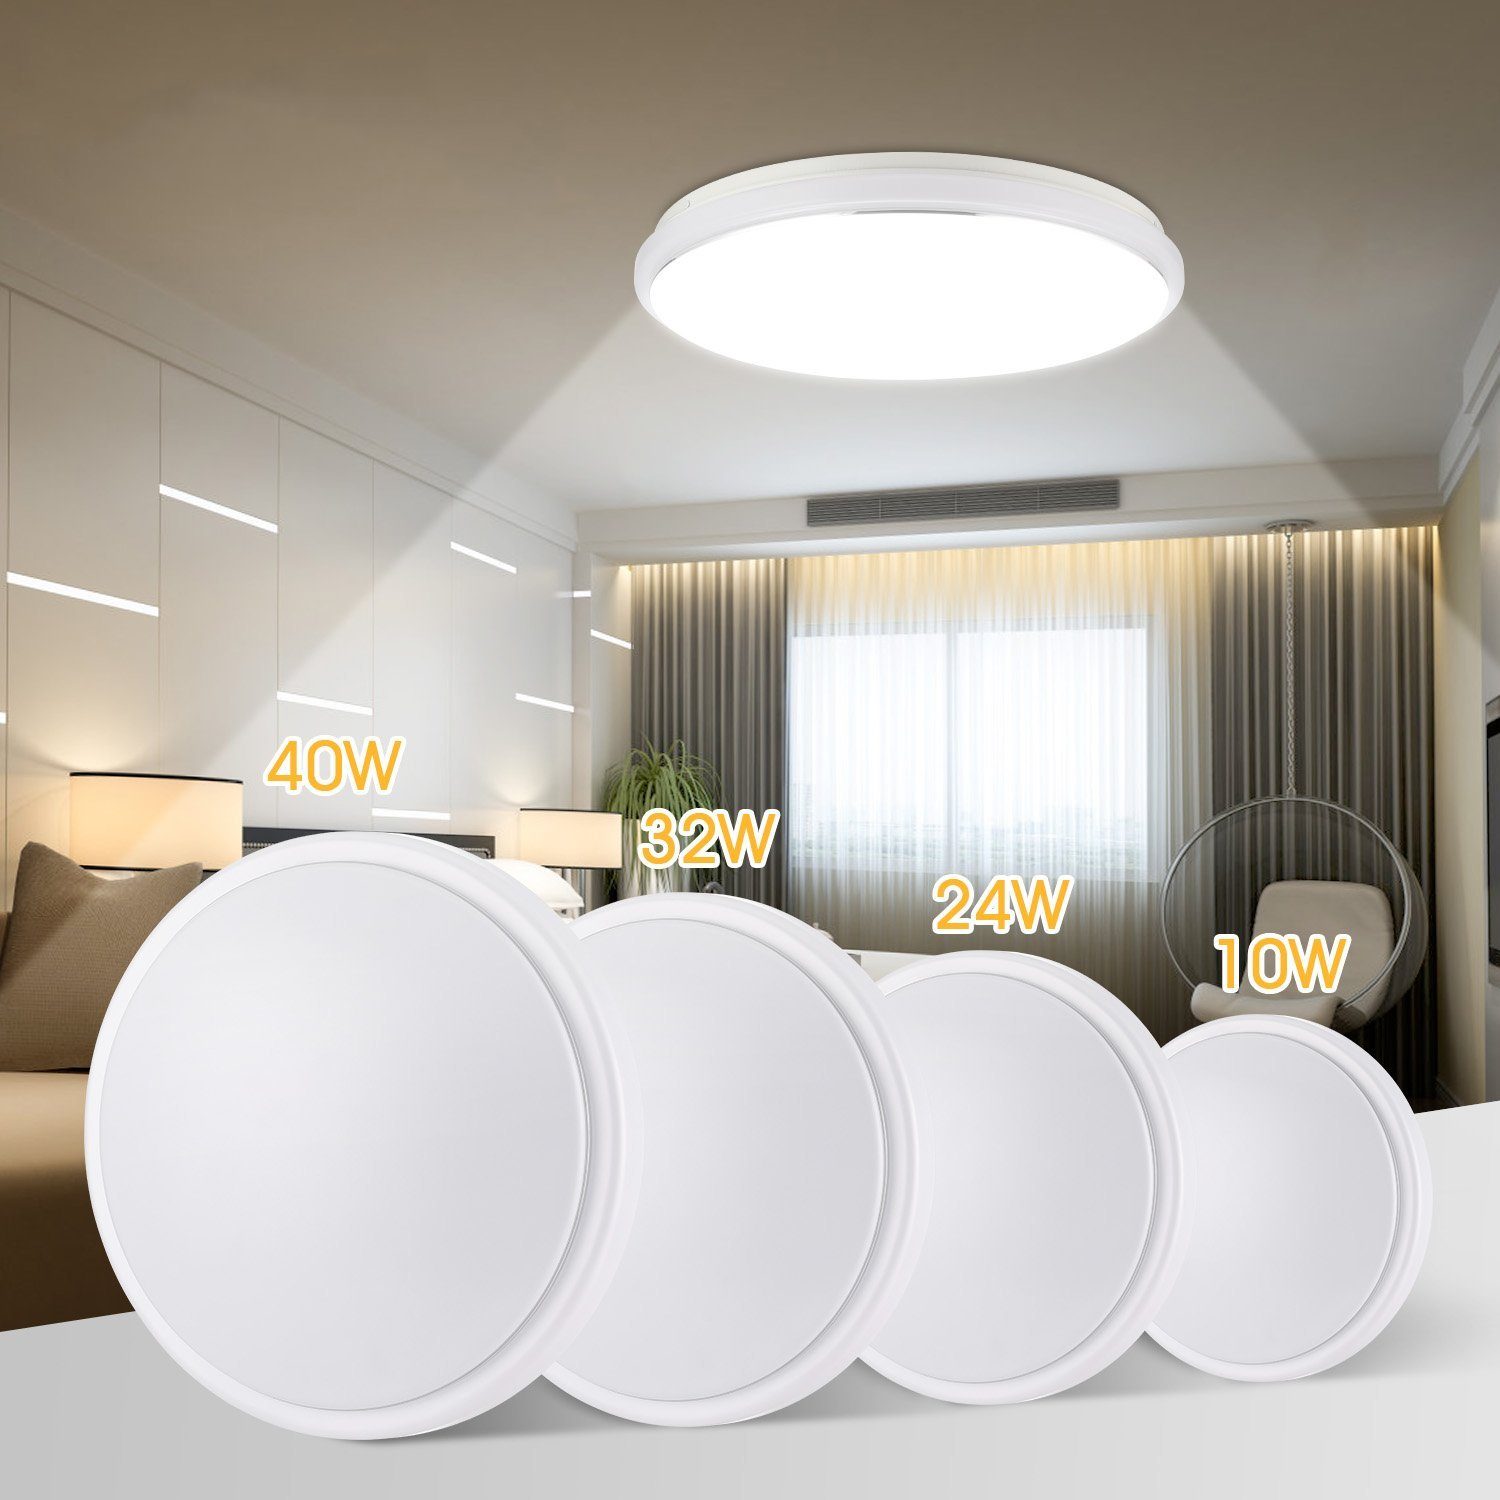 LETGOSPT Deckenleuchte LED Deckenleuchte Flach Rund Deckenlampe Modern Weiß 6000K Led Lampen, LED fest integriert, Kaltweiß, IP44 Wasserdicht, für Badezimmer Schlafzimmer Wohnzimmer Küche Balkon 32W (38 x 38 x 7,5 cm)